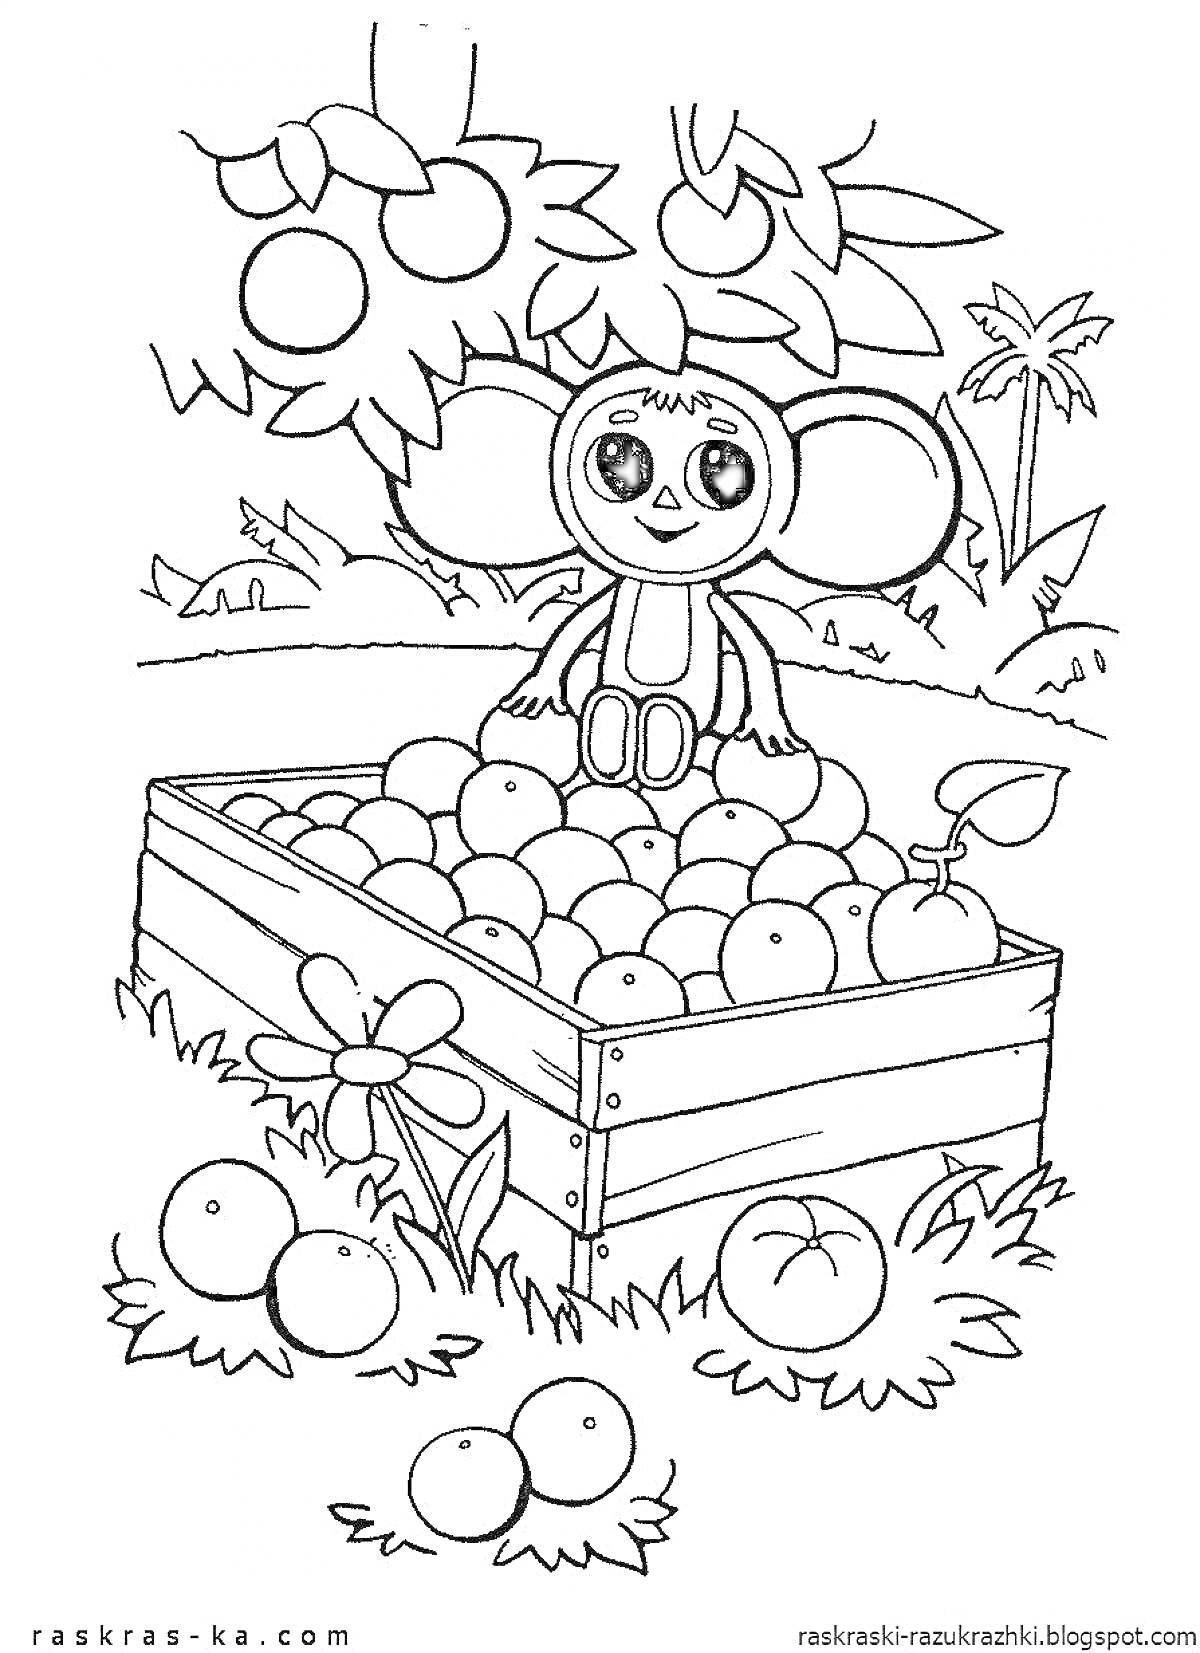 РаскраскаЧебурашка сидит на ящике, полном фруктов под яблоней